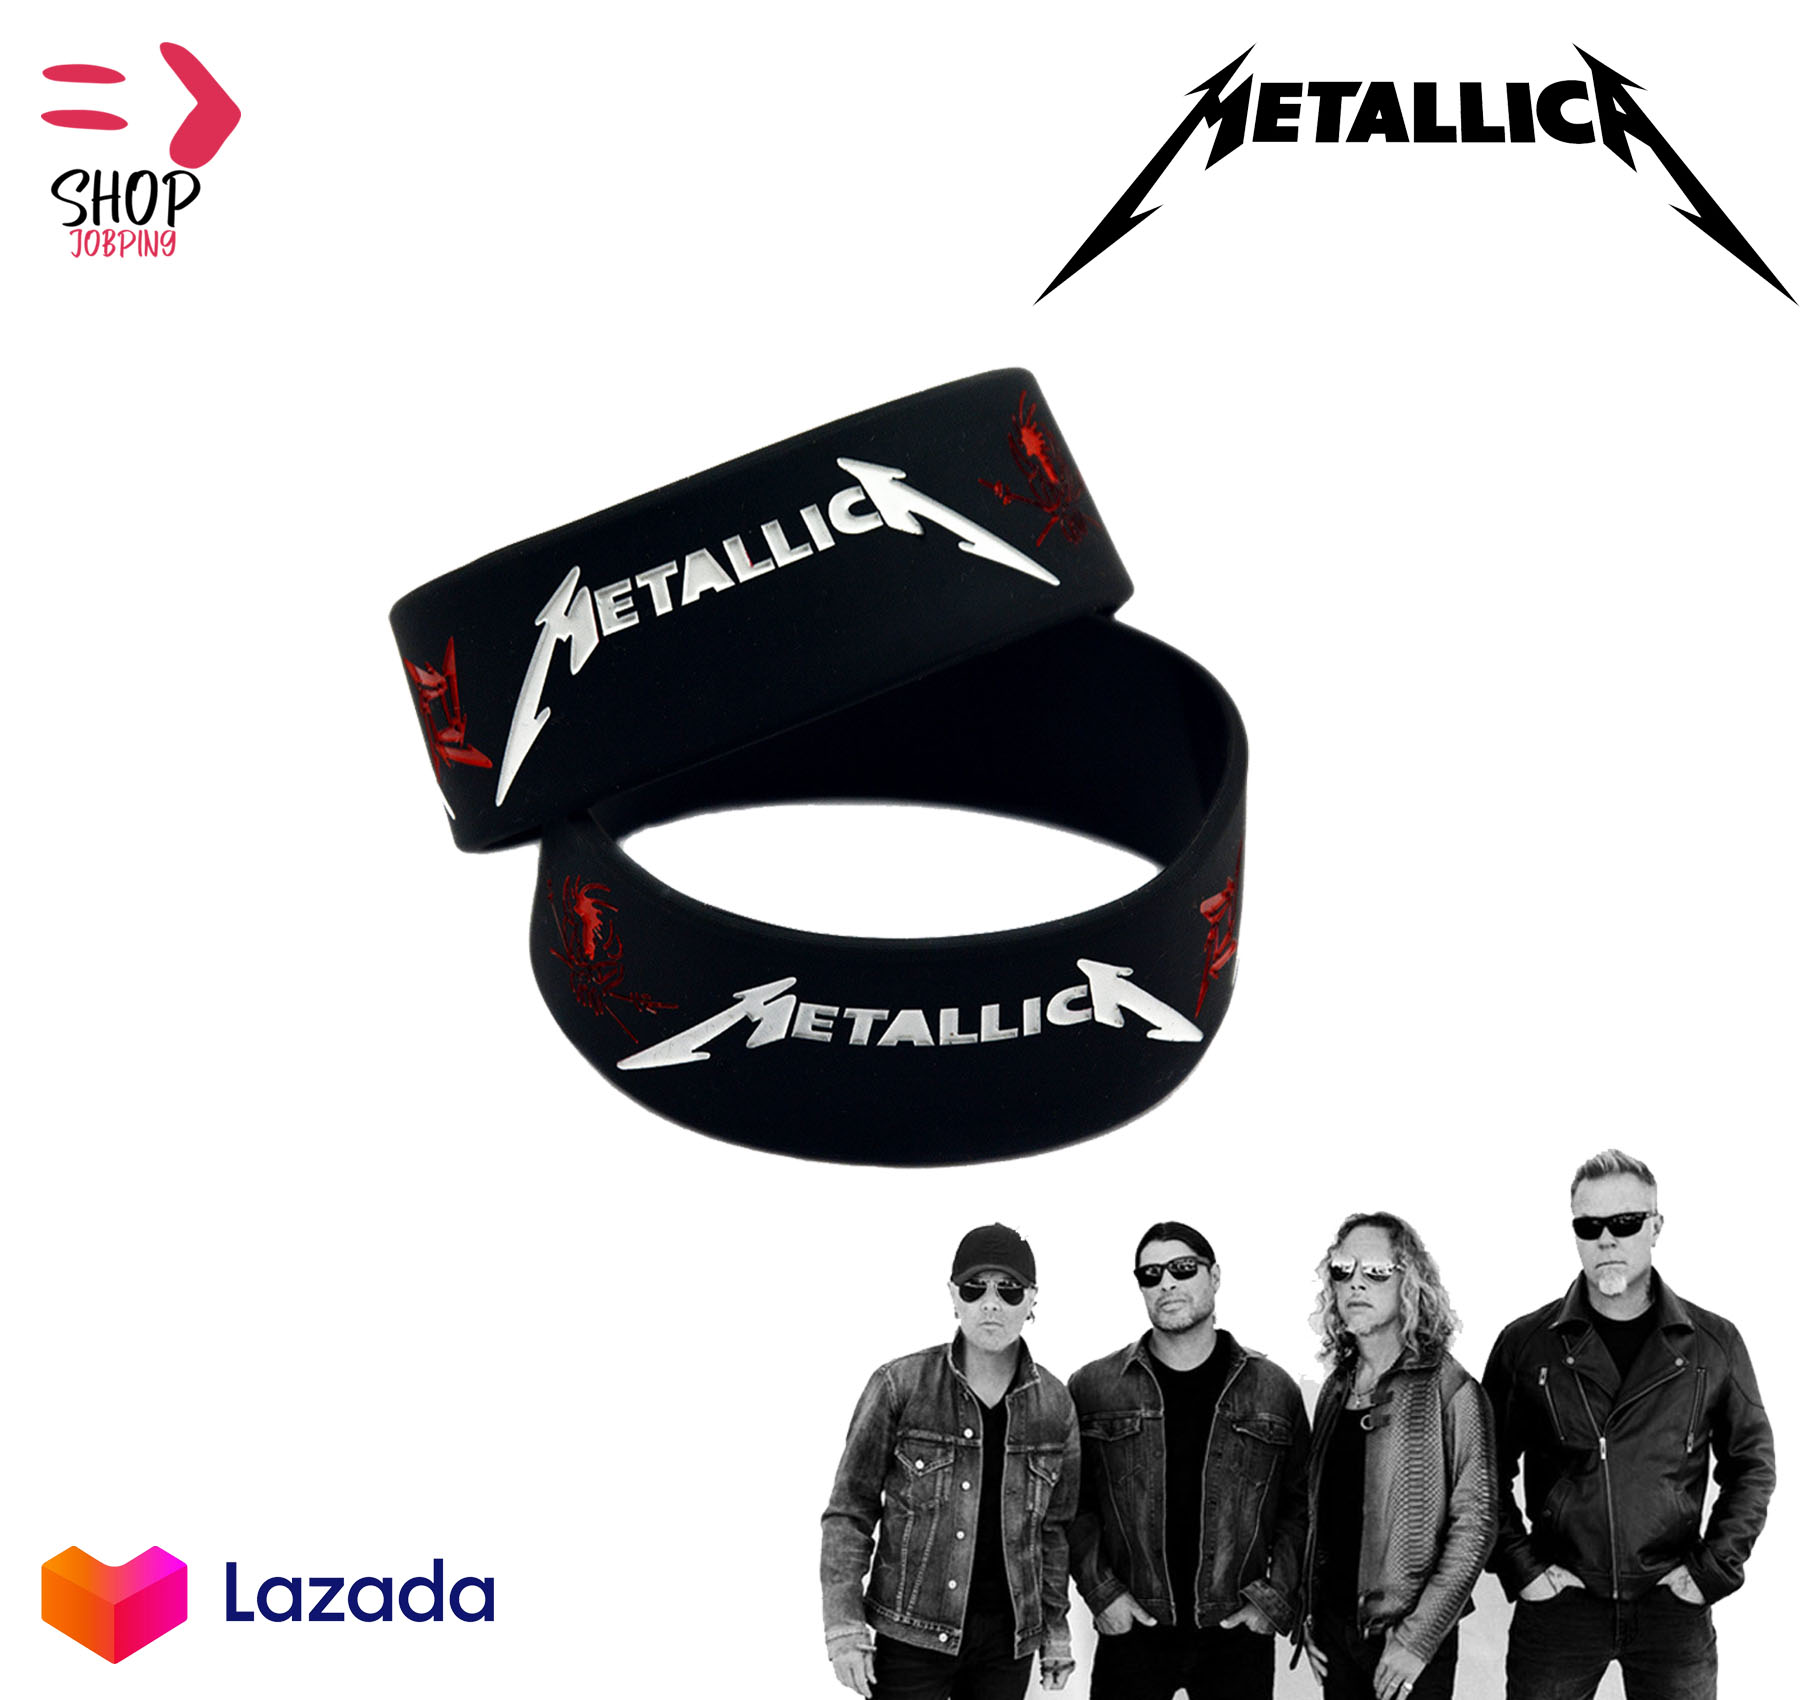 Metallica เมทัลลิกา ริสแบนด์  Wristband  วงเฮฟวี่เมทัลสัญชาติอเมริกัน ปั๊มลึกสีคมชัด วงดนตรี Wristband วงดนตรีร็อค สายรัดข้อมือ วงร็อค เดธเมทัล